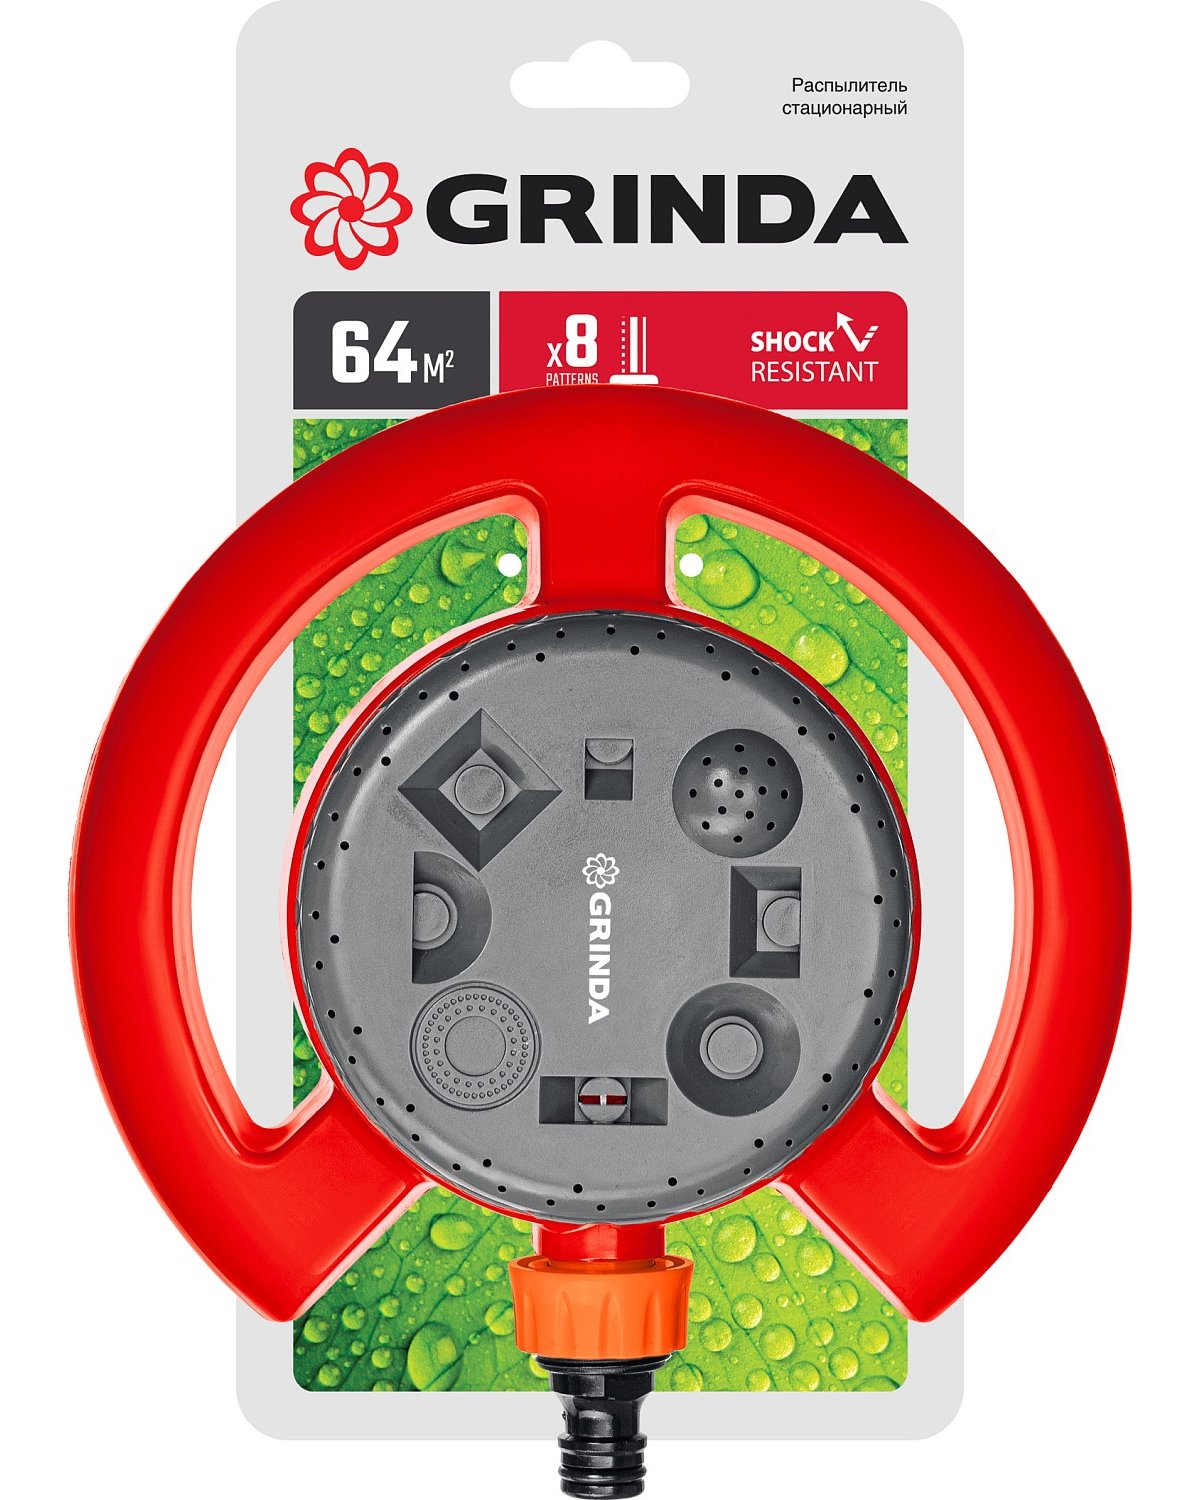 Стационарный распылитель GRINDA GF-8 на облегченной подставке, пластиковый (8-427643)